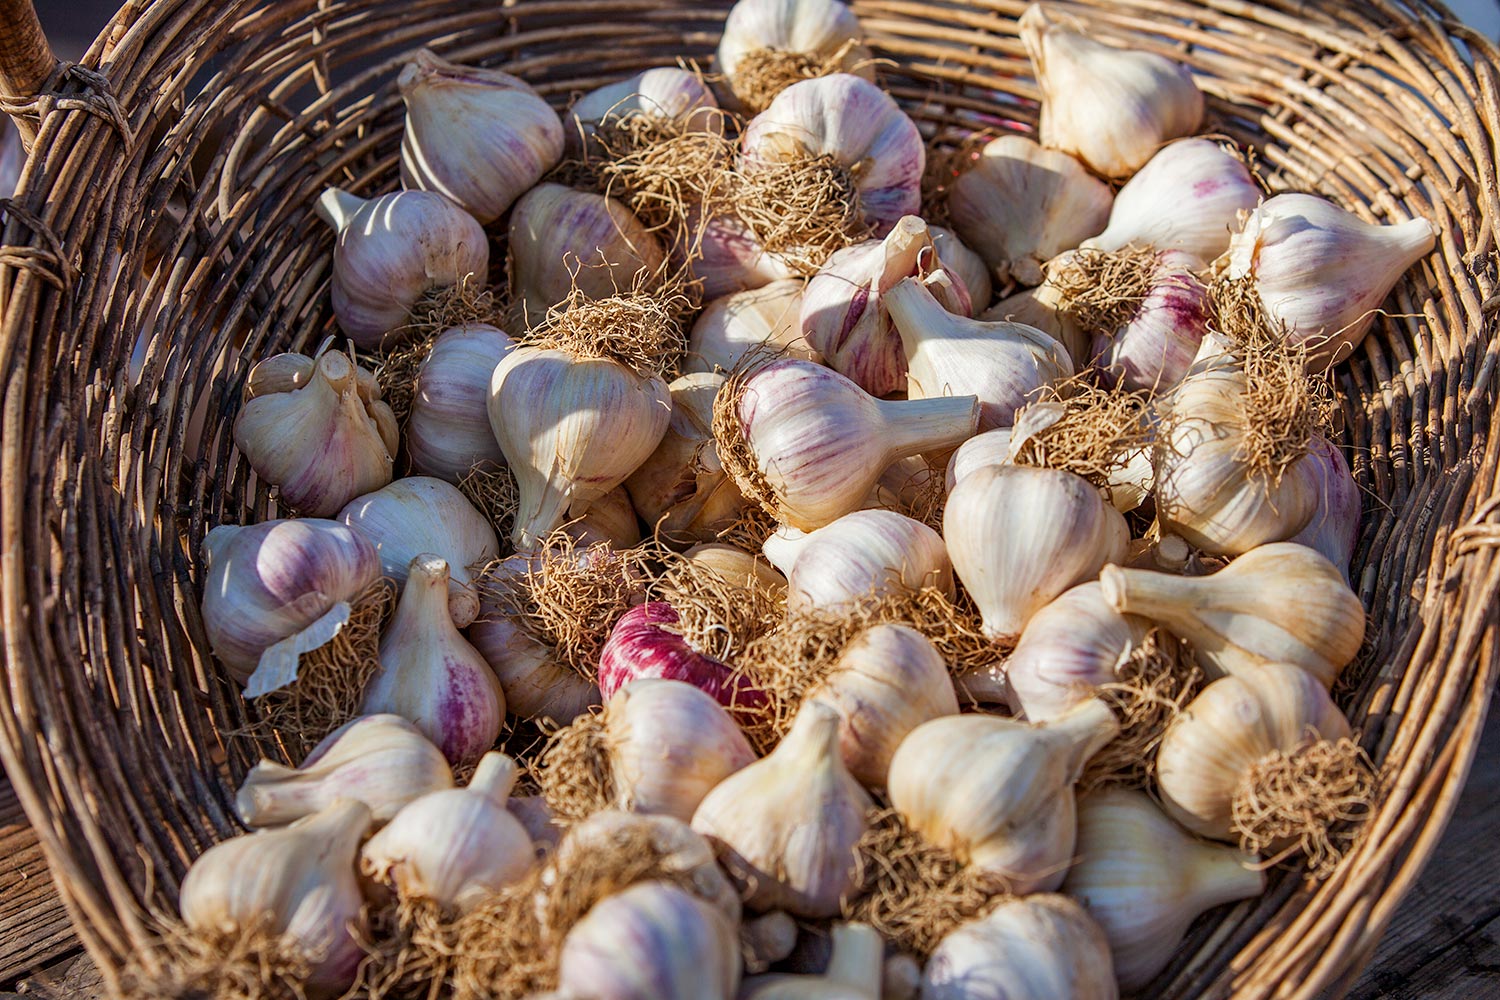 Basket of Garlic